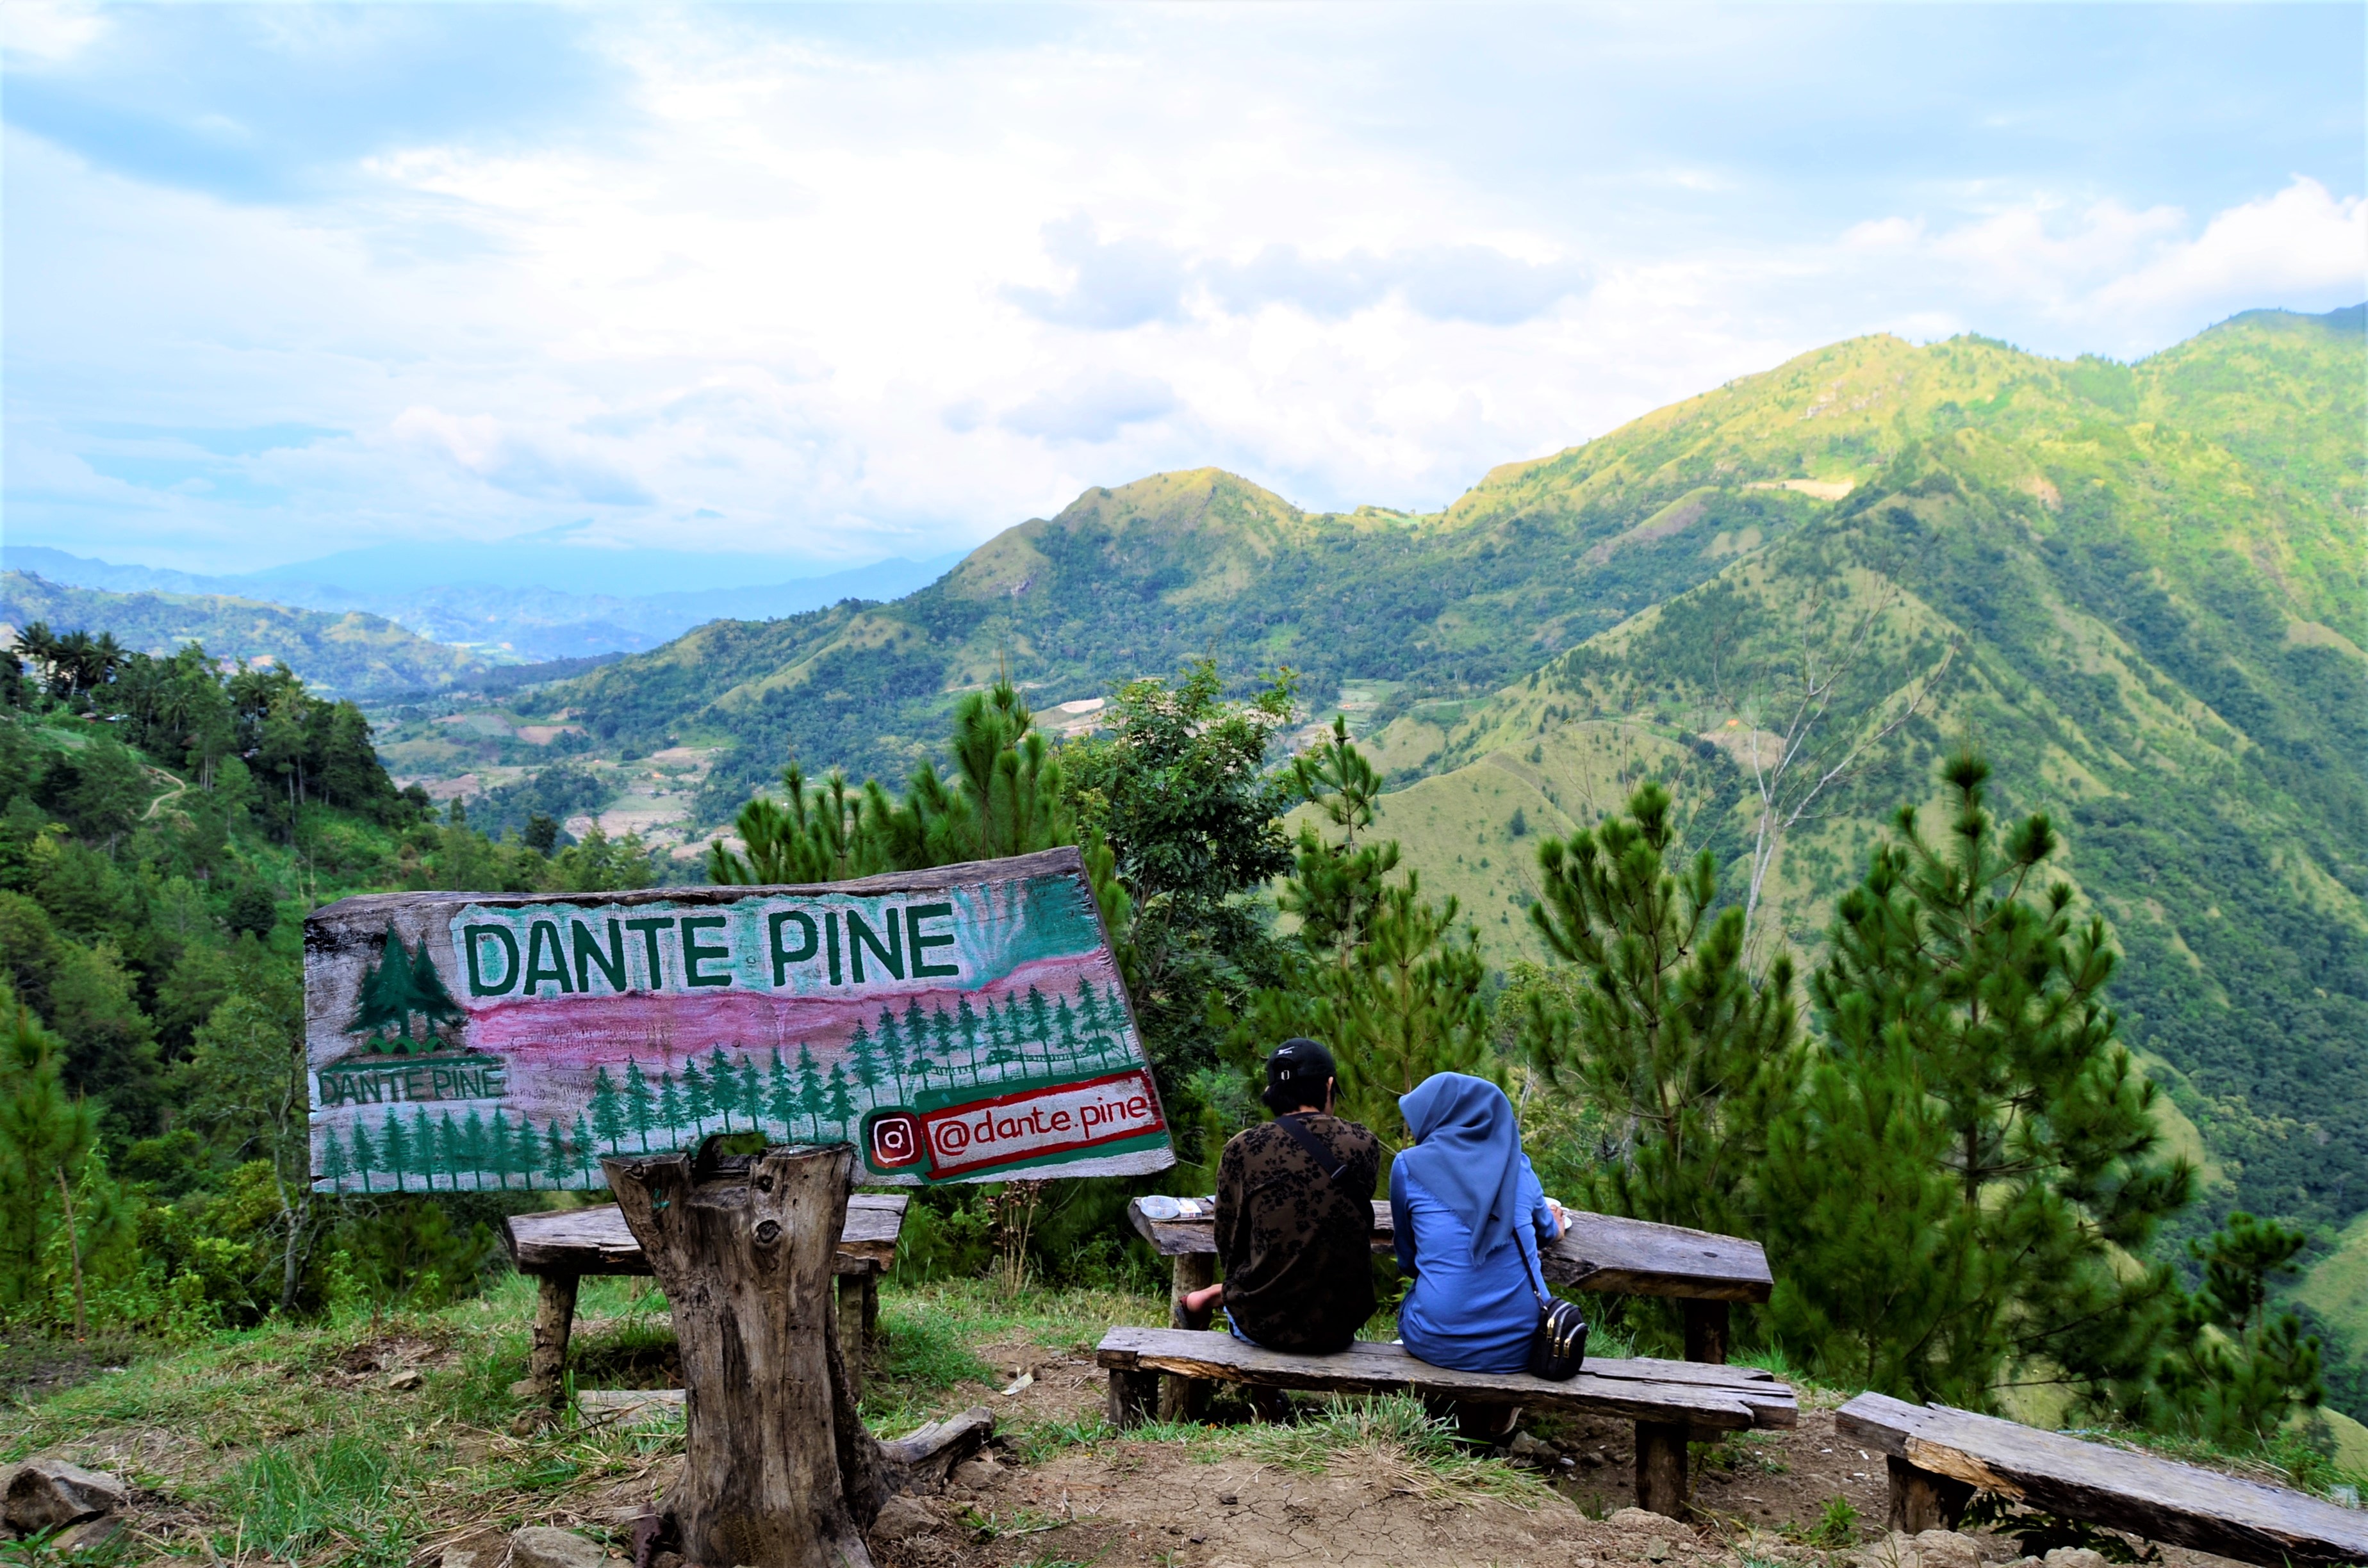 Dante Pine, Wisata Unik dan Ekstrem di Enrekang